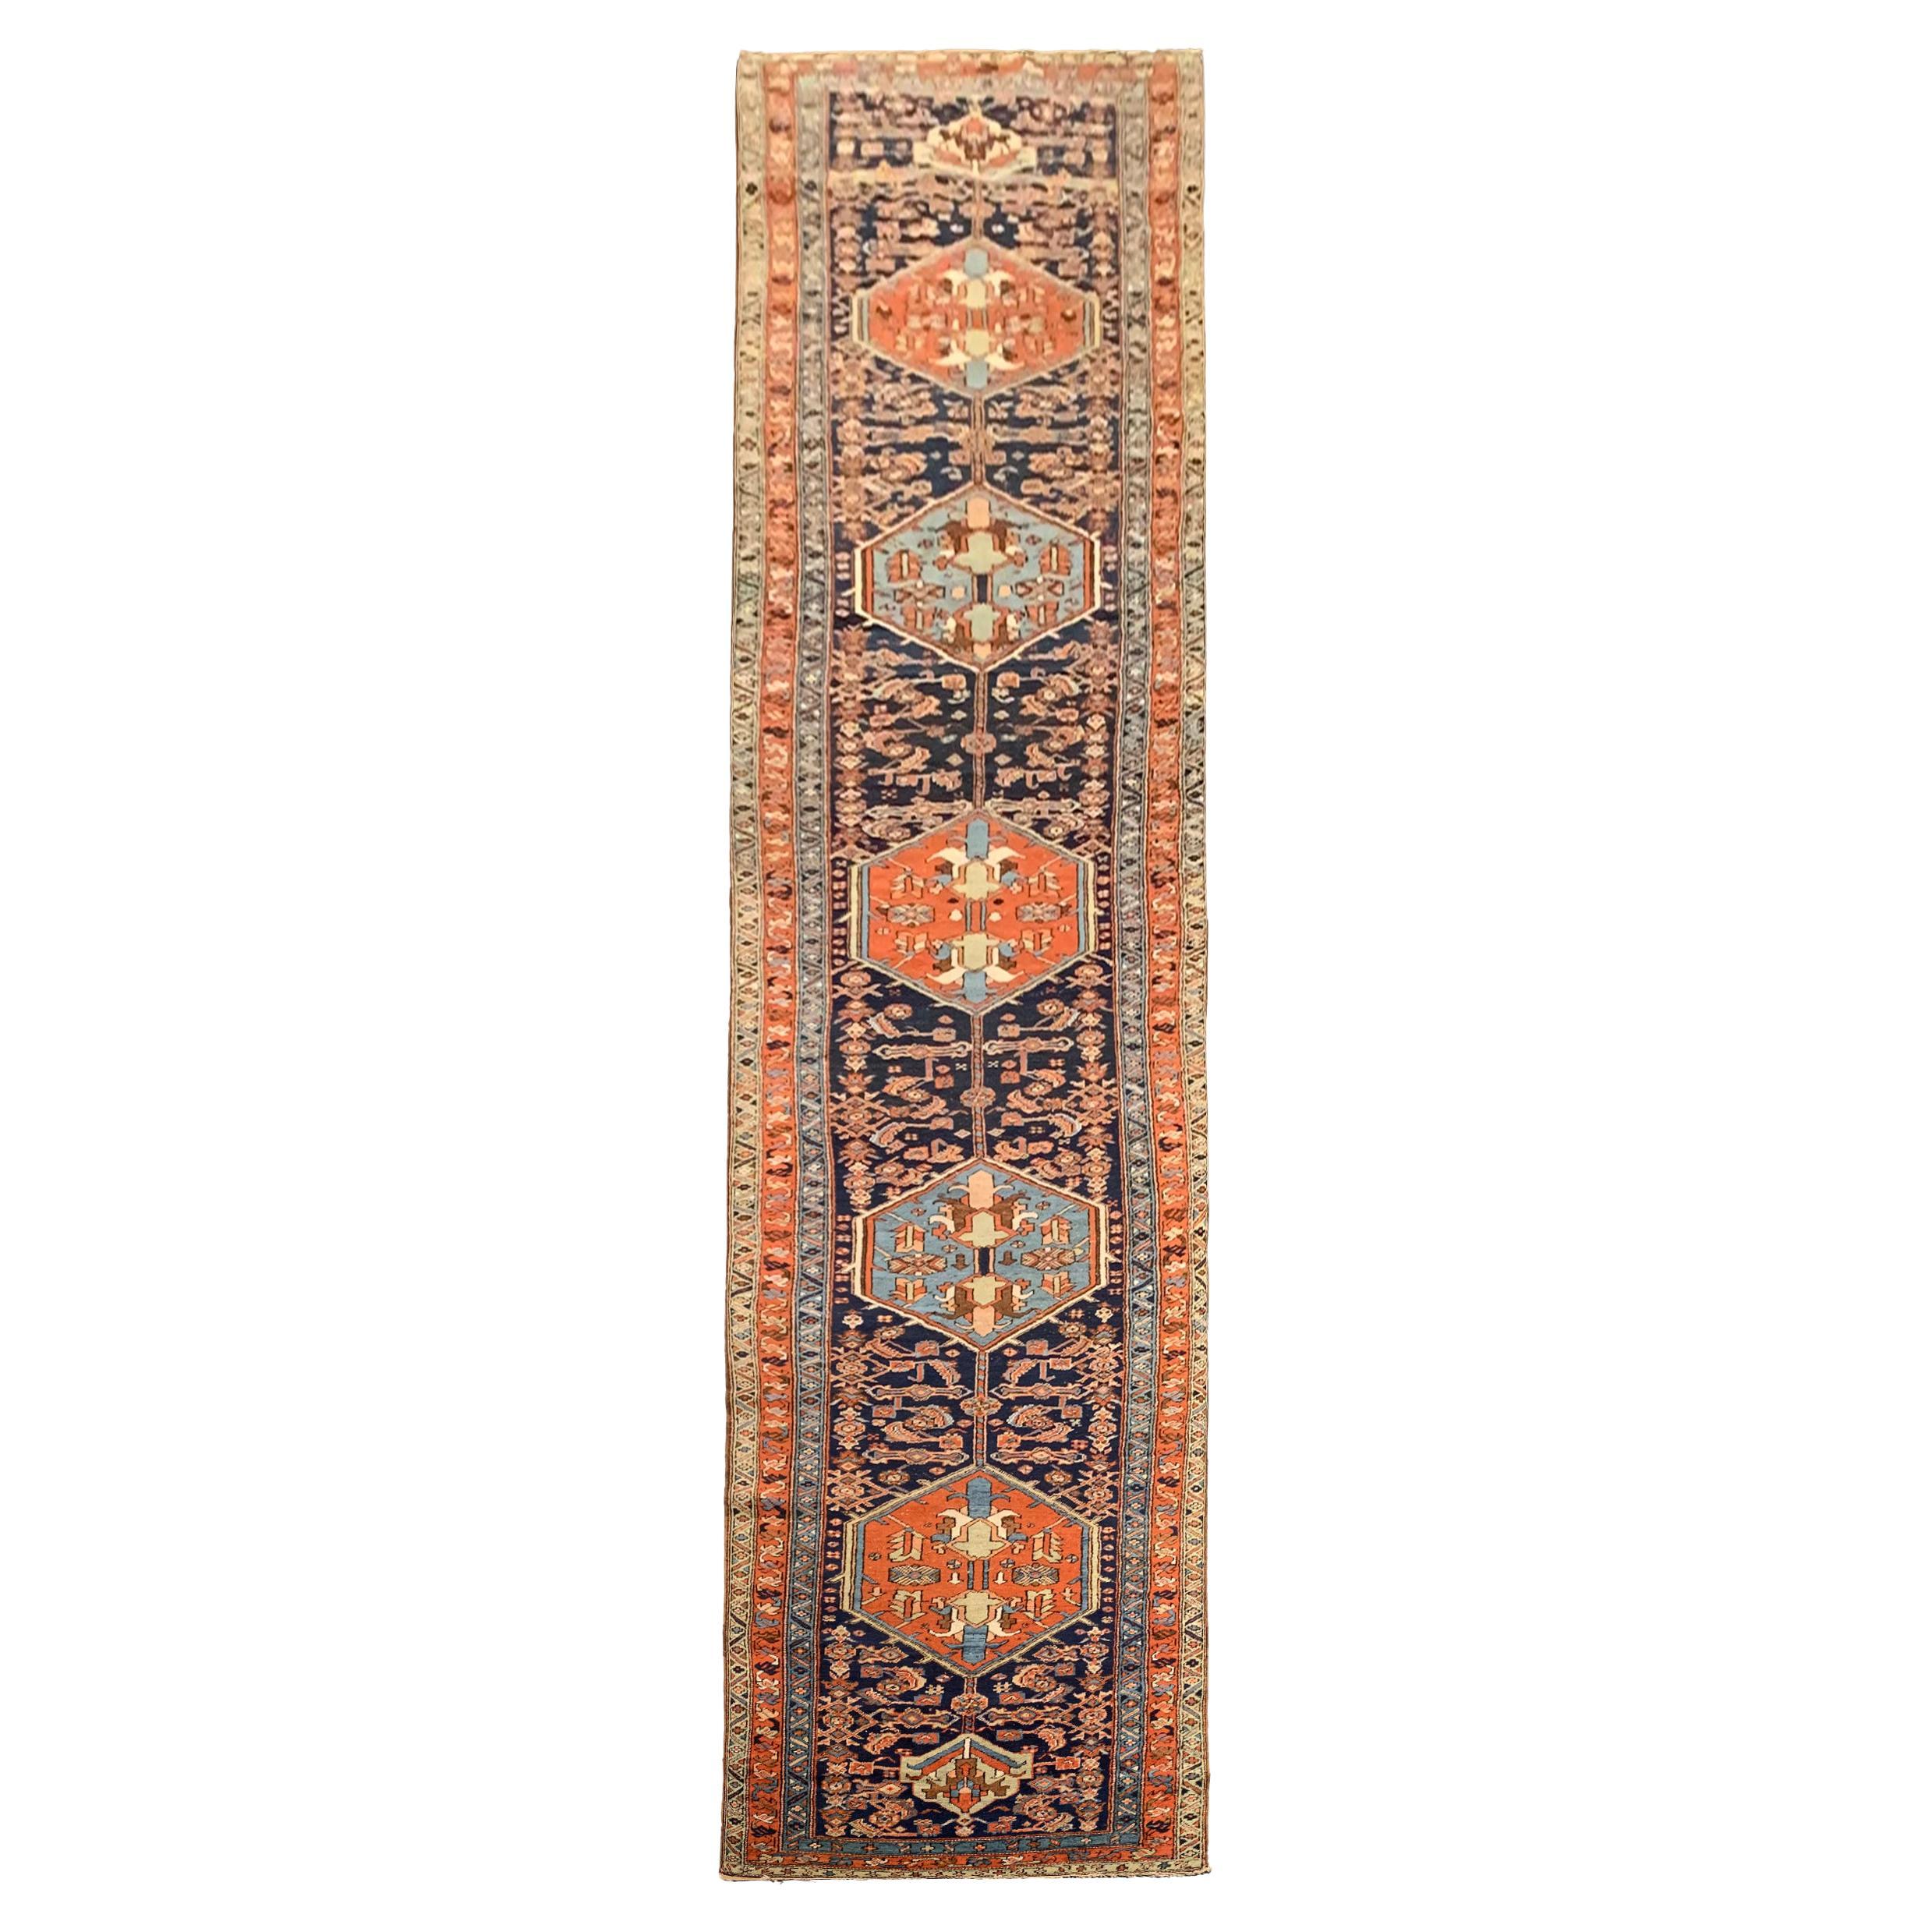 Handgefertigter antiker Woll-Läufer, Läufer, traditioneller Stammeskunst-Teppich